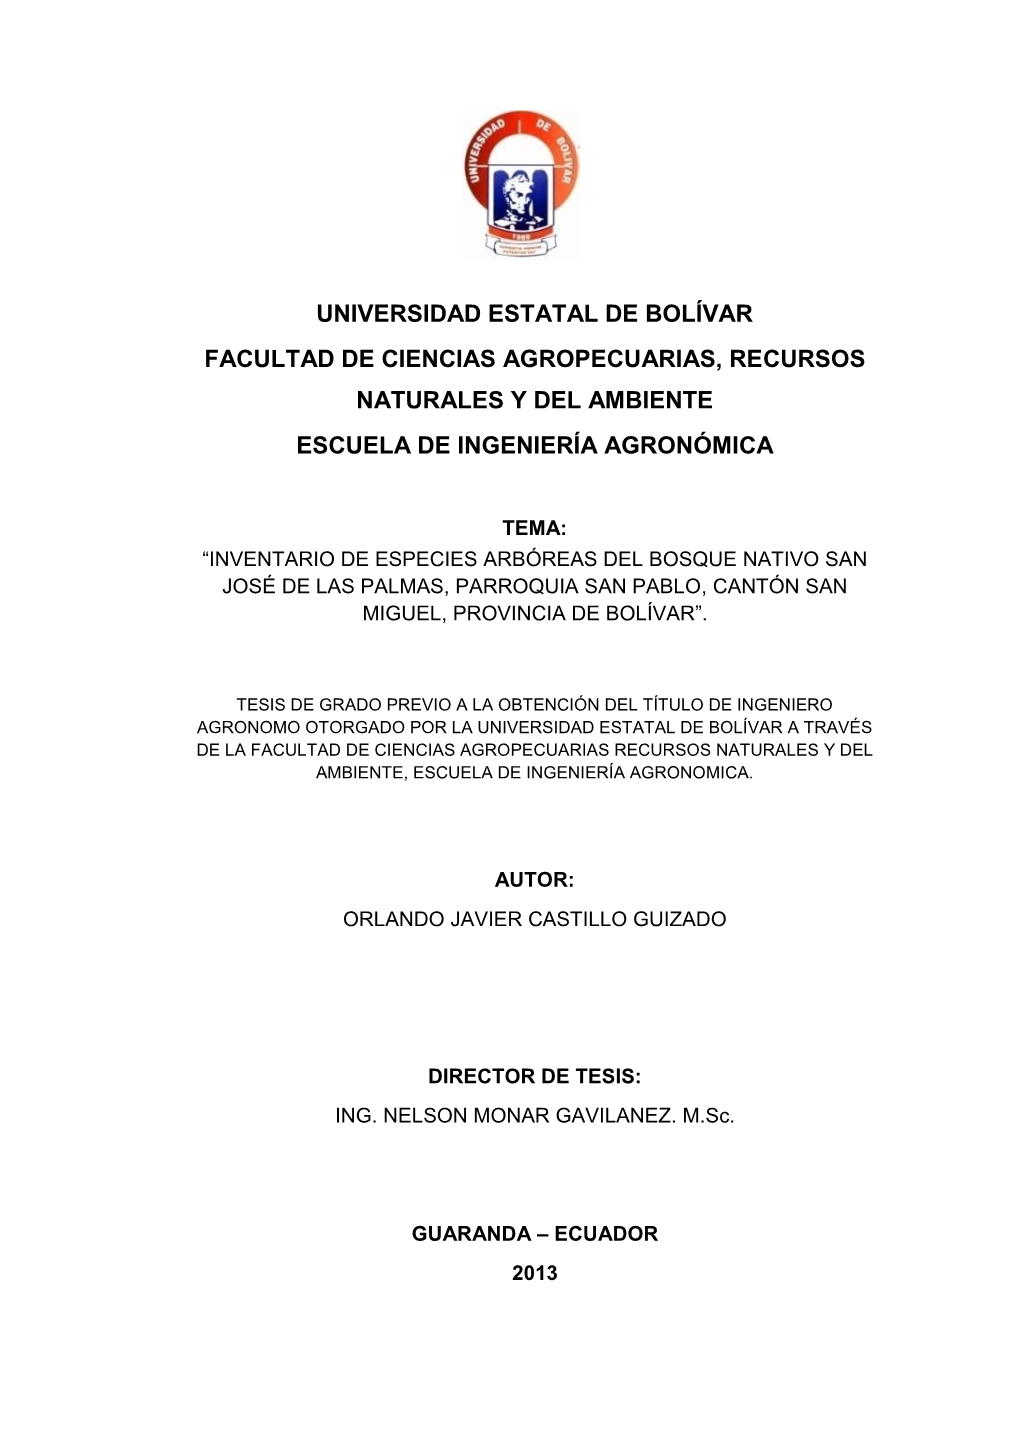 Universidad Estatal De Bolívar Facultad De Ciencias Agropecuarias, Recursos Naturales Y Del Ambiente Escuela De Ingeniería Agronómica